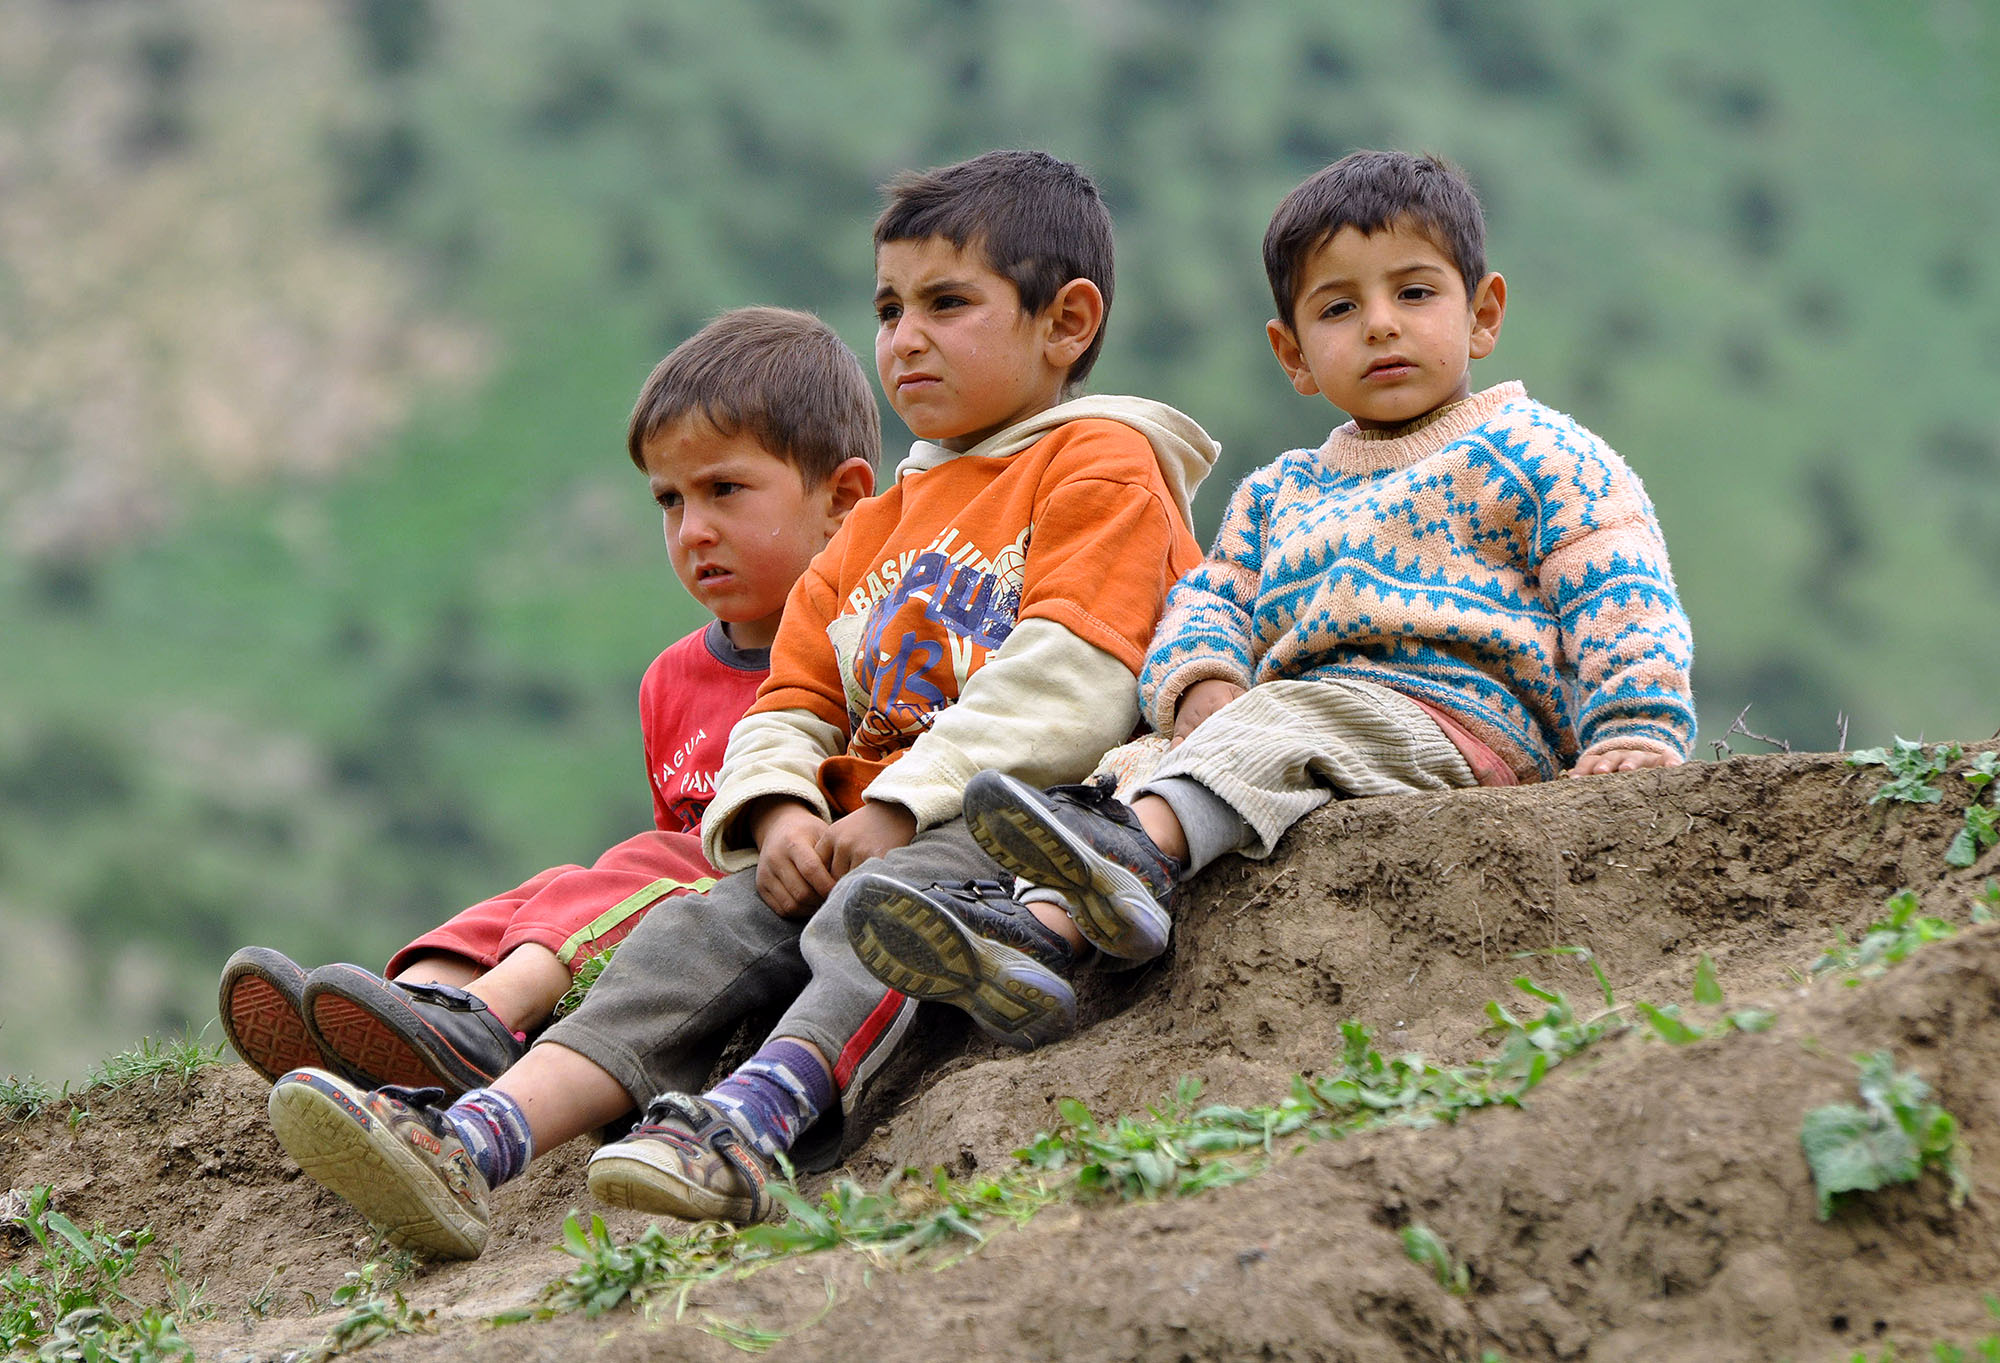 Kurdish boys